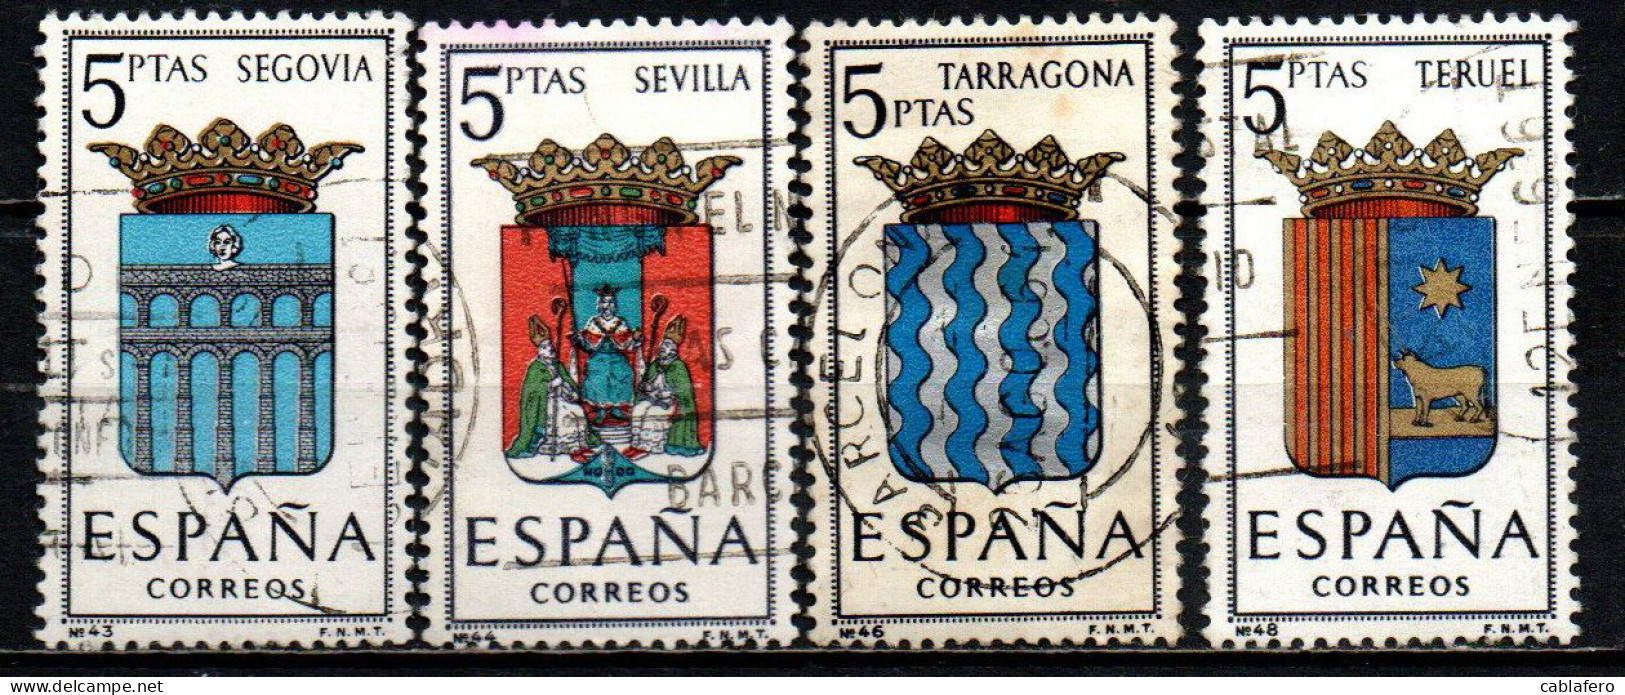 SPAGNA - 1965 - STEMMI DELLE PROVINCE SPAGNOLE: SEGOVIA, SEVILLA, TARRAGONA, TERUEL - USATI - Used Stamps